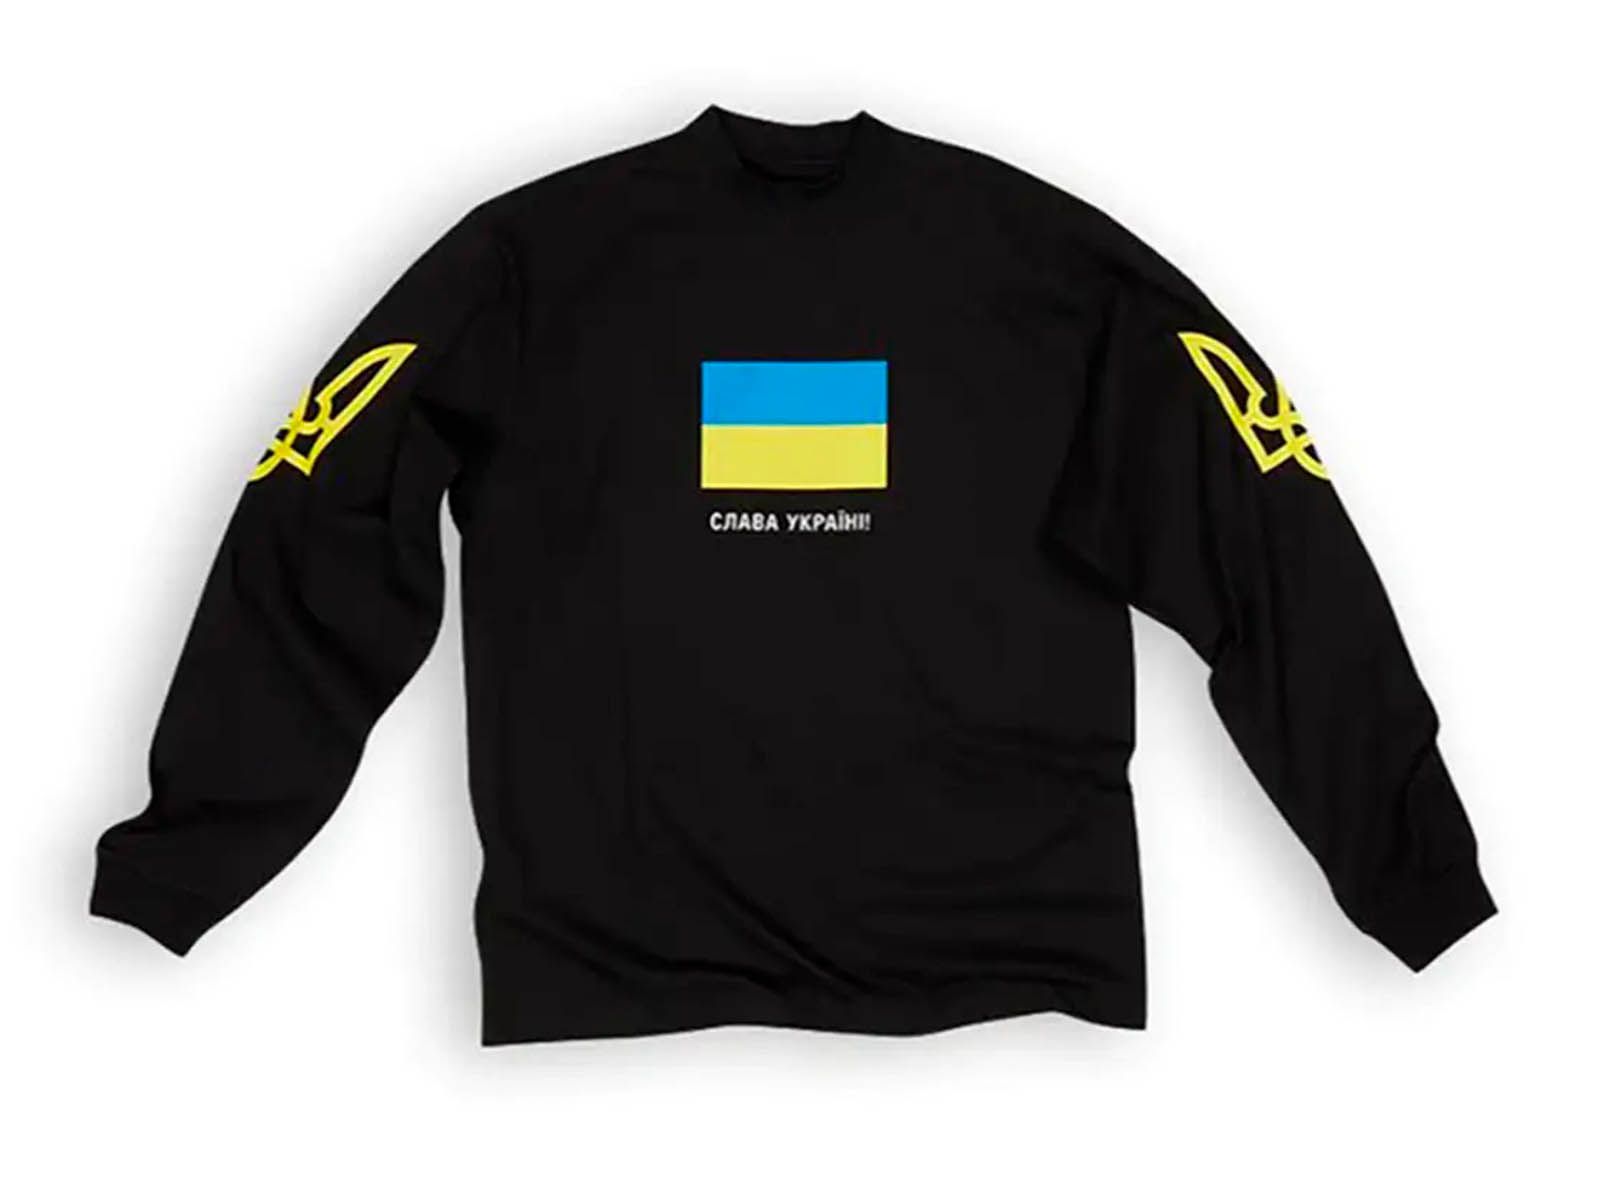 Balenciaga diseña una nueva camiseta solidaria por Ucrania